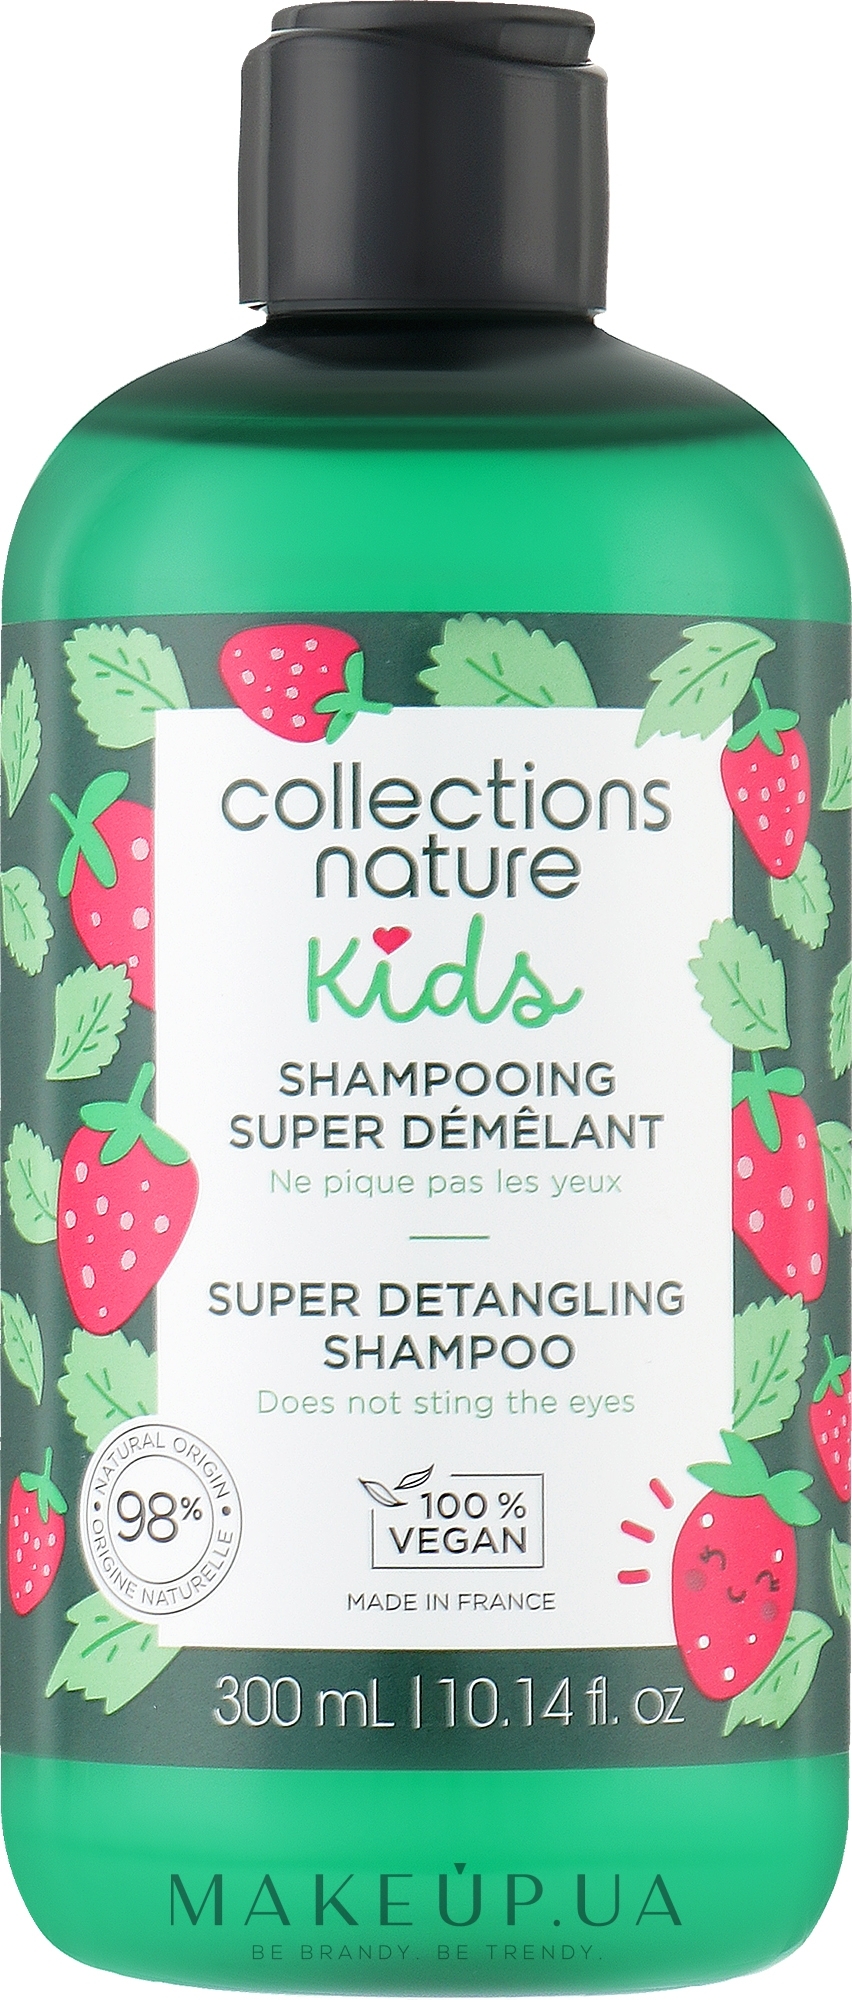 Шампунь для распутывания волос - Eugene Perma Collections Nature Kids Super Detangling Shampoo — фото 300ml